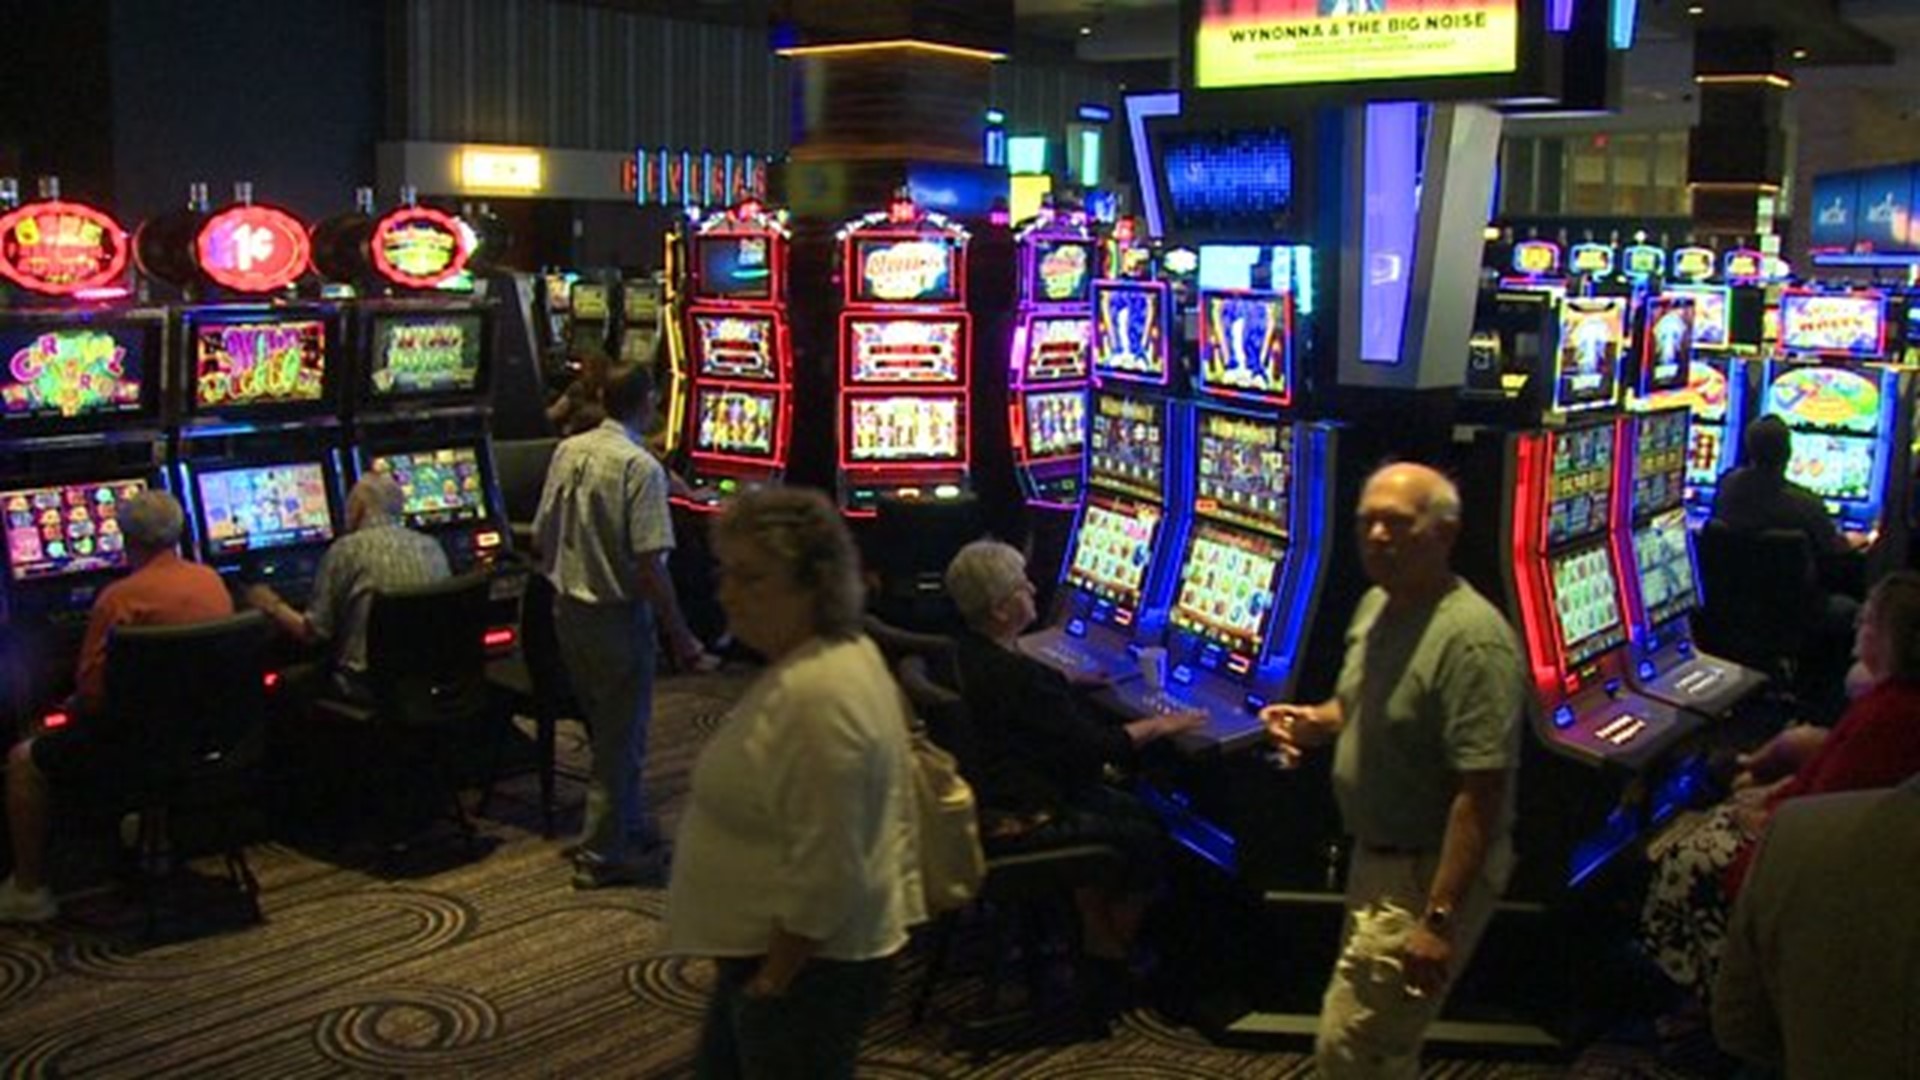 Isle opens new land based casino